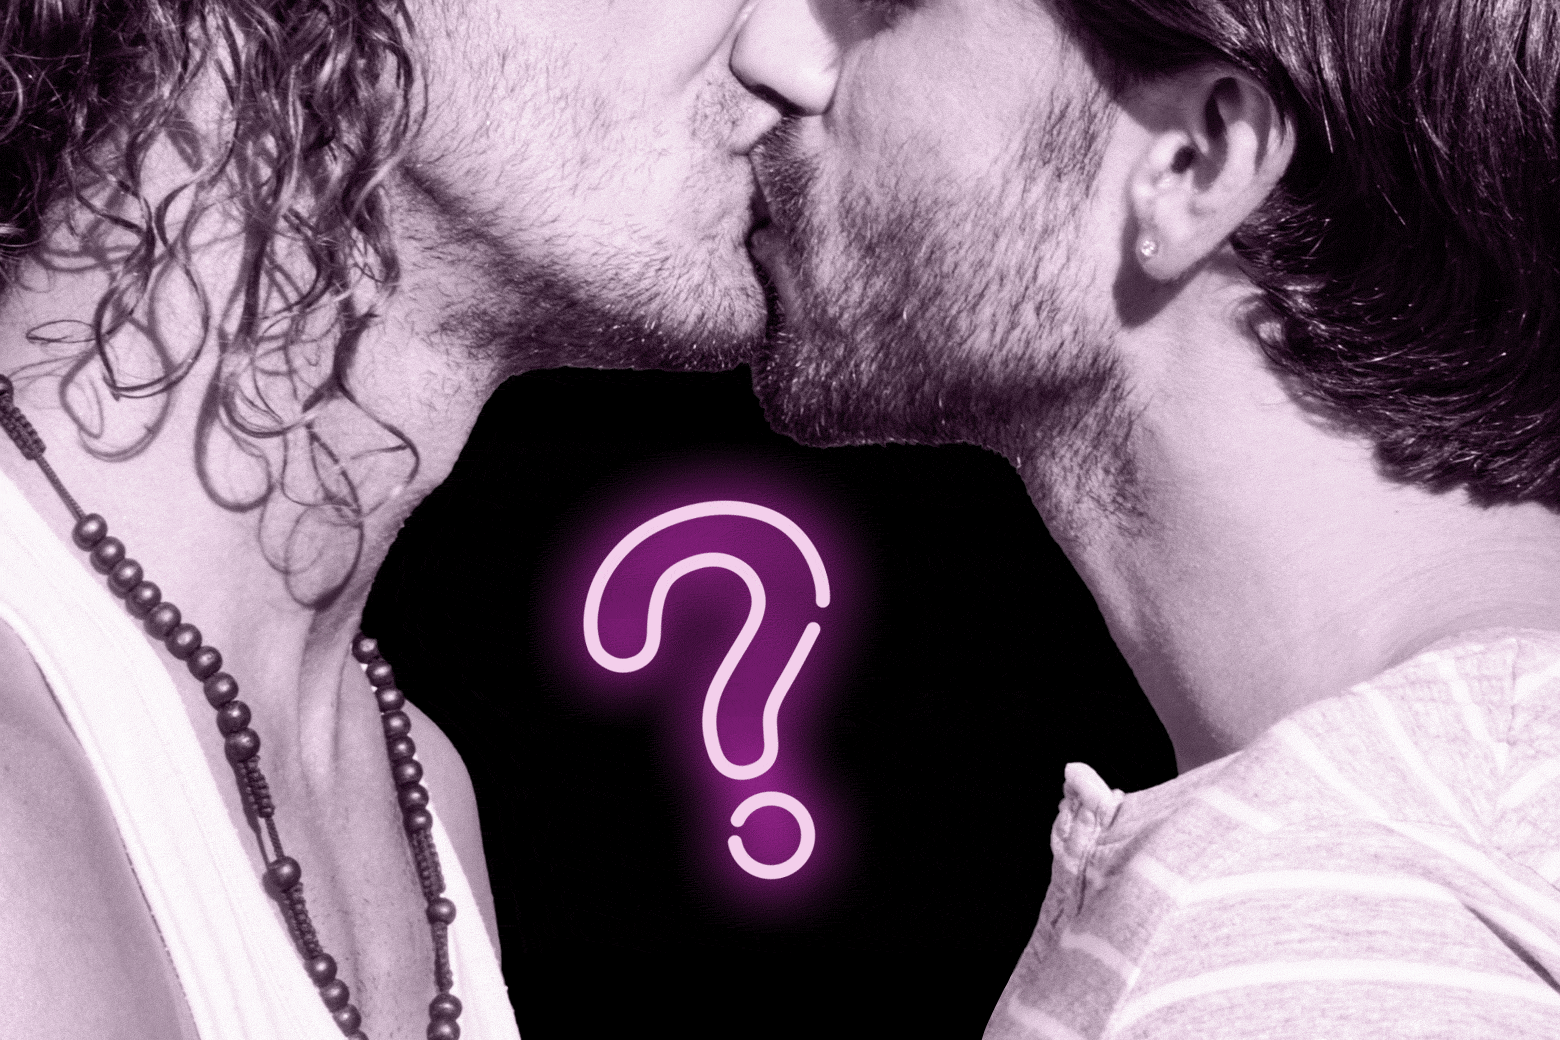 Two men kissing.